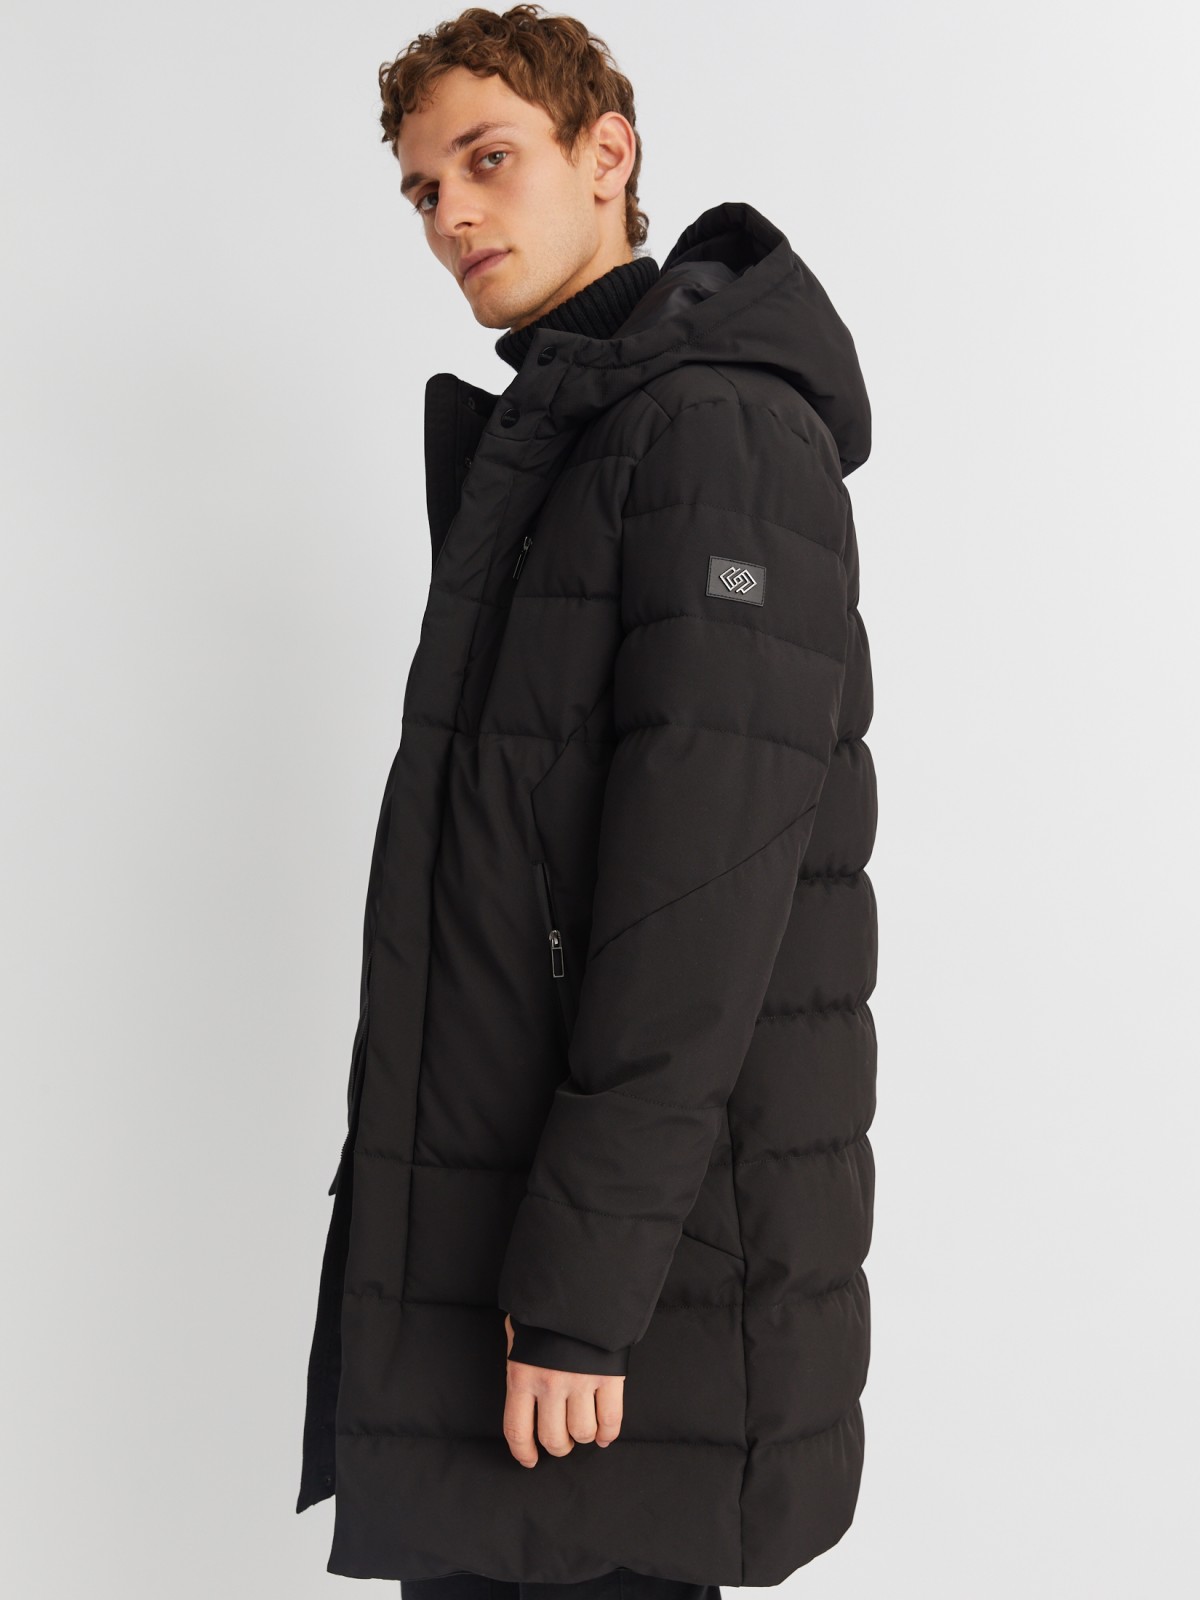 Тёплая удлинённая куртка с капюшоном и внутренними манжетами zolla черного цвета